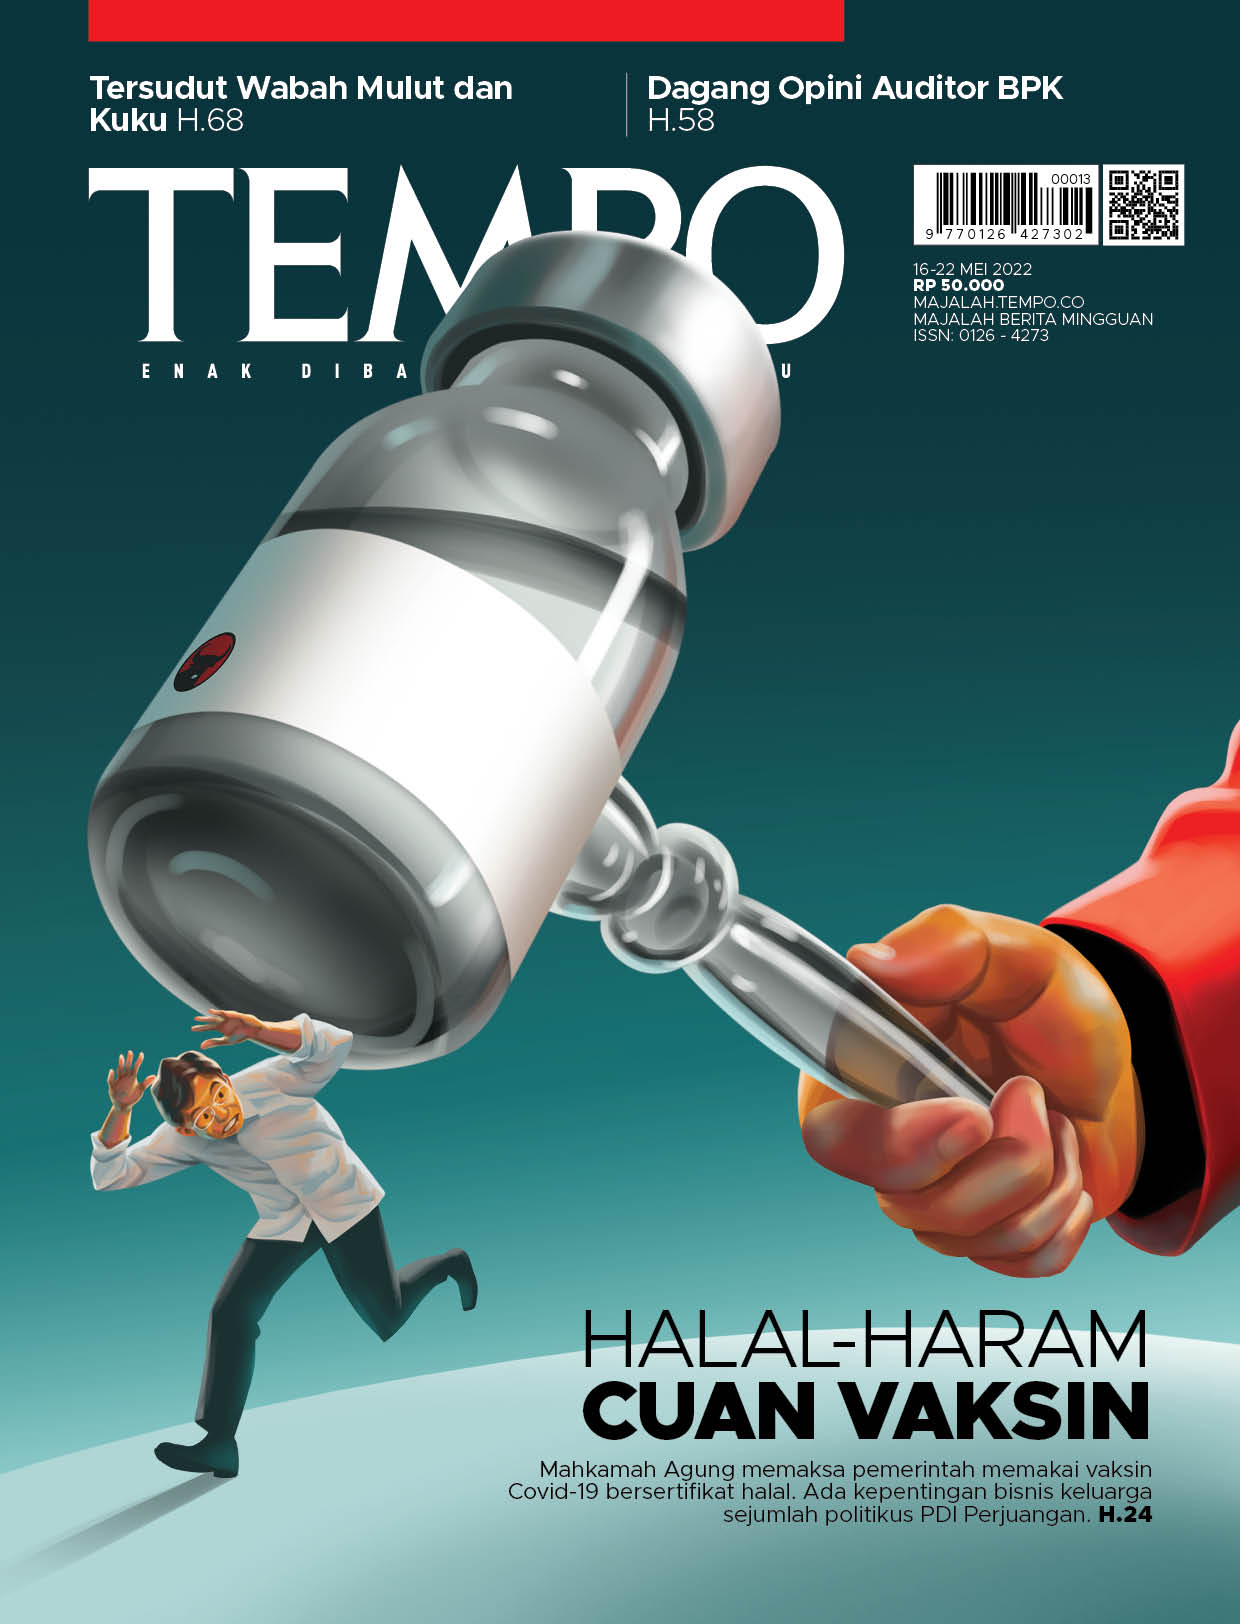 Cover Majalah Tempo - Edisi 14 Mei 2022 - Halal-Haram Cuan Vaksin